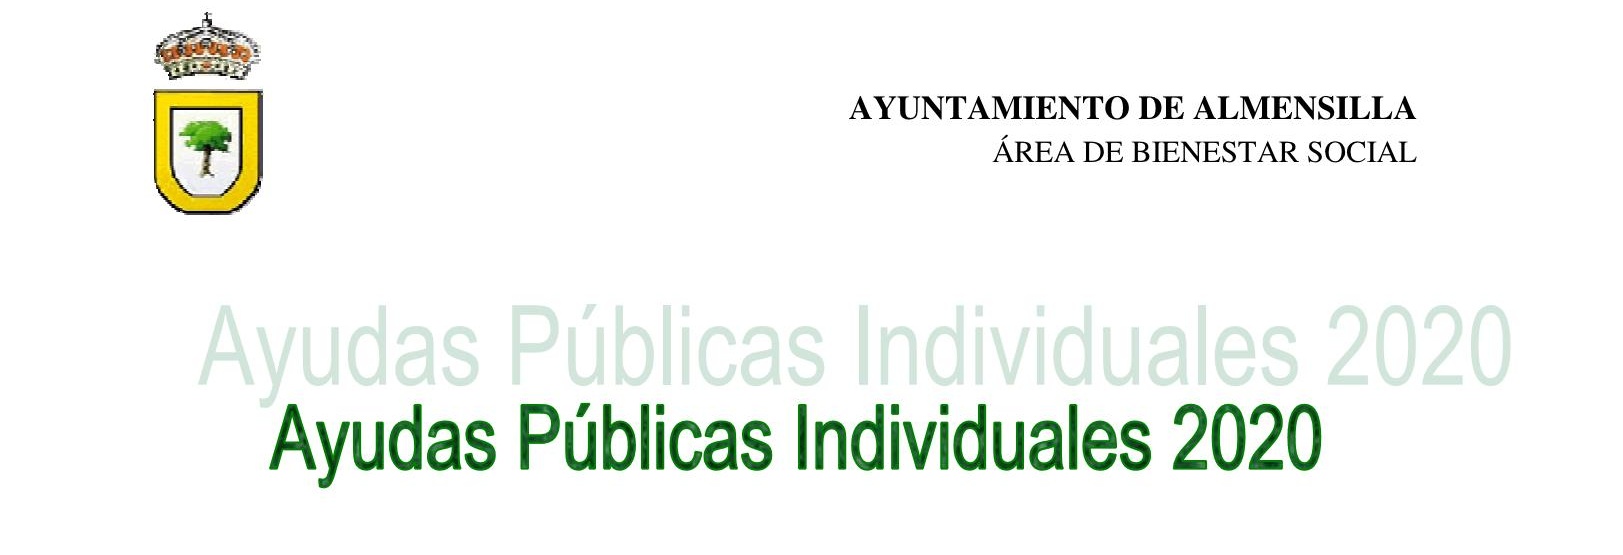 CARTEL AYUDAS PUBLICAS INDIVIDUALES 2020